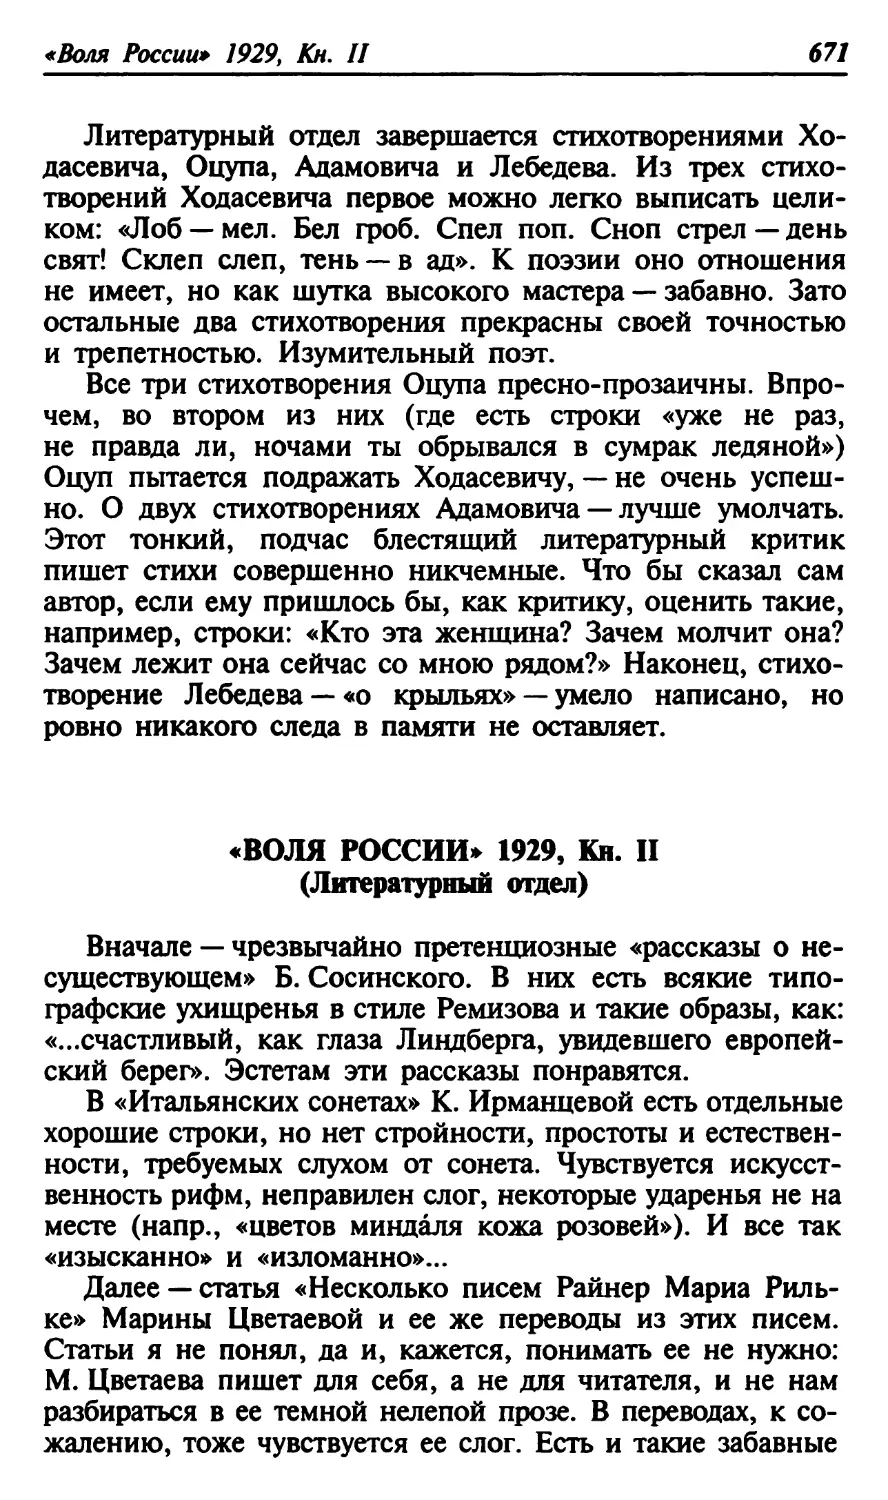 «Воля России» 1929, Кн. II